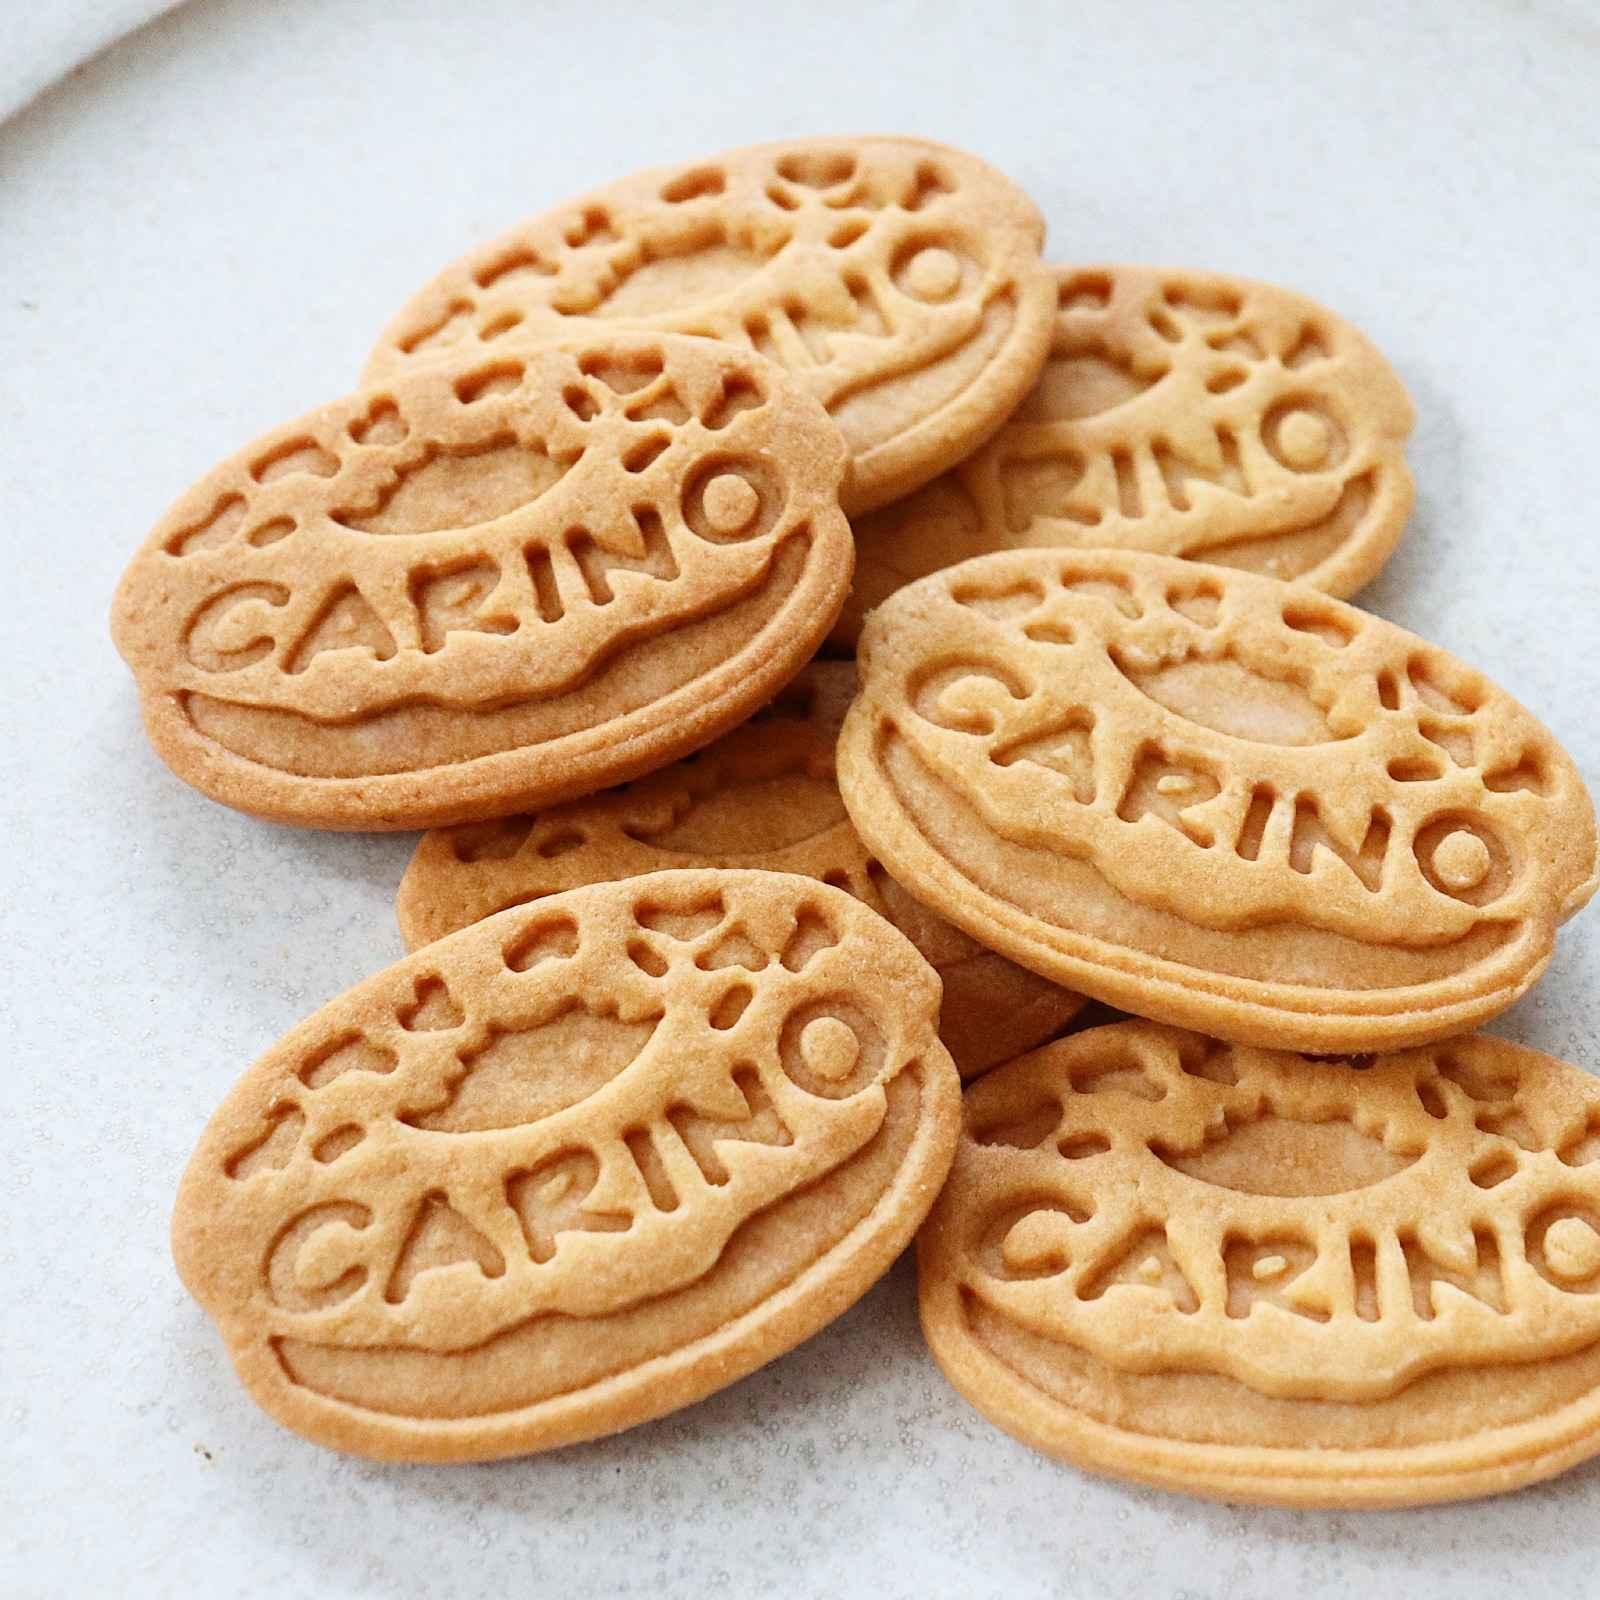 アイシングクッキーとお菓子教室CARINO(カリーノ)